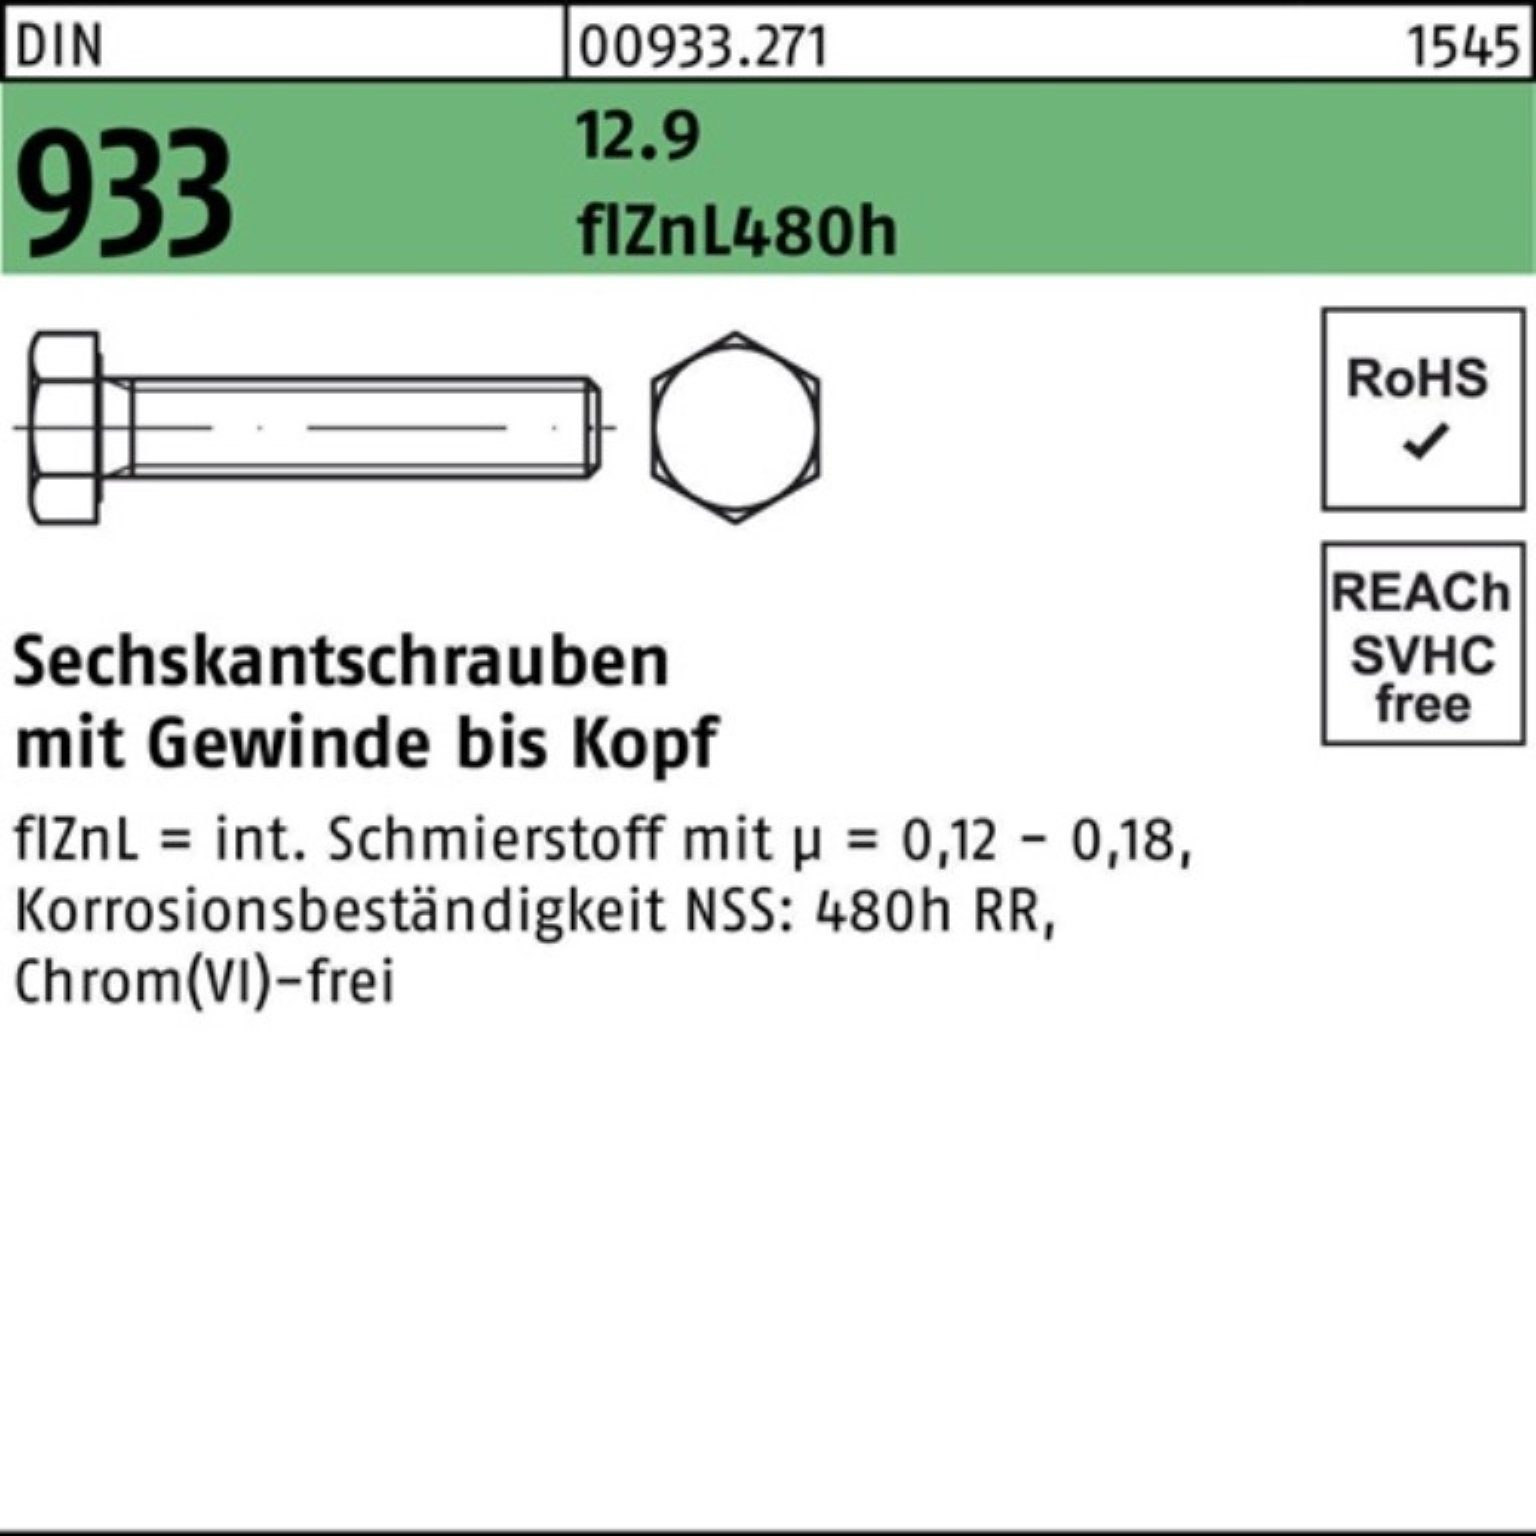 Reyher Sechskantschraube 200er Pack Sechskantschraube DIN 933 VG M8x 20 12.9 flZnL 480h zinklam